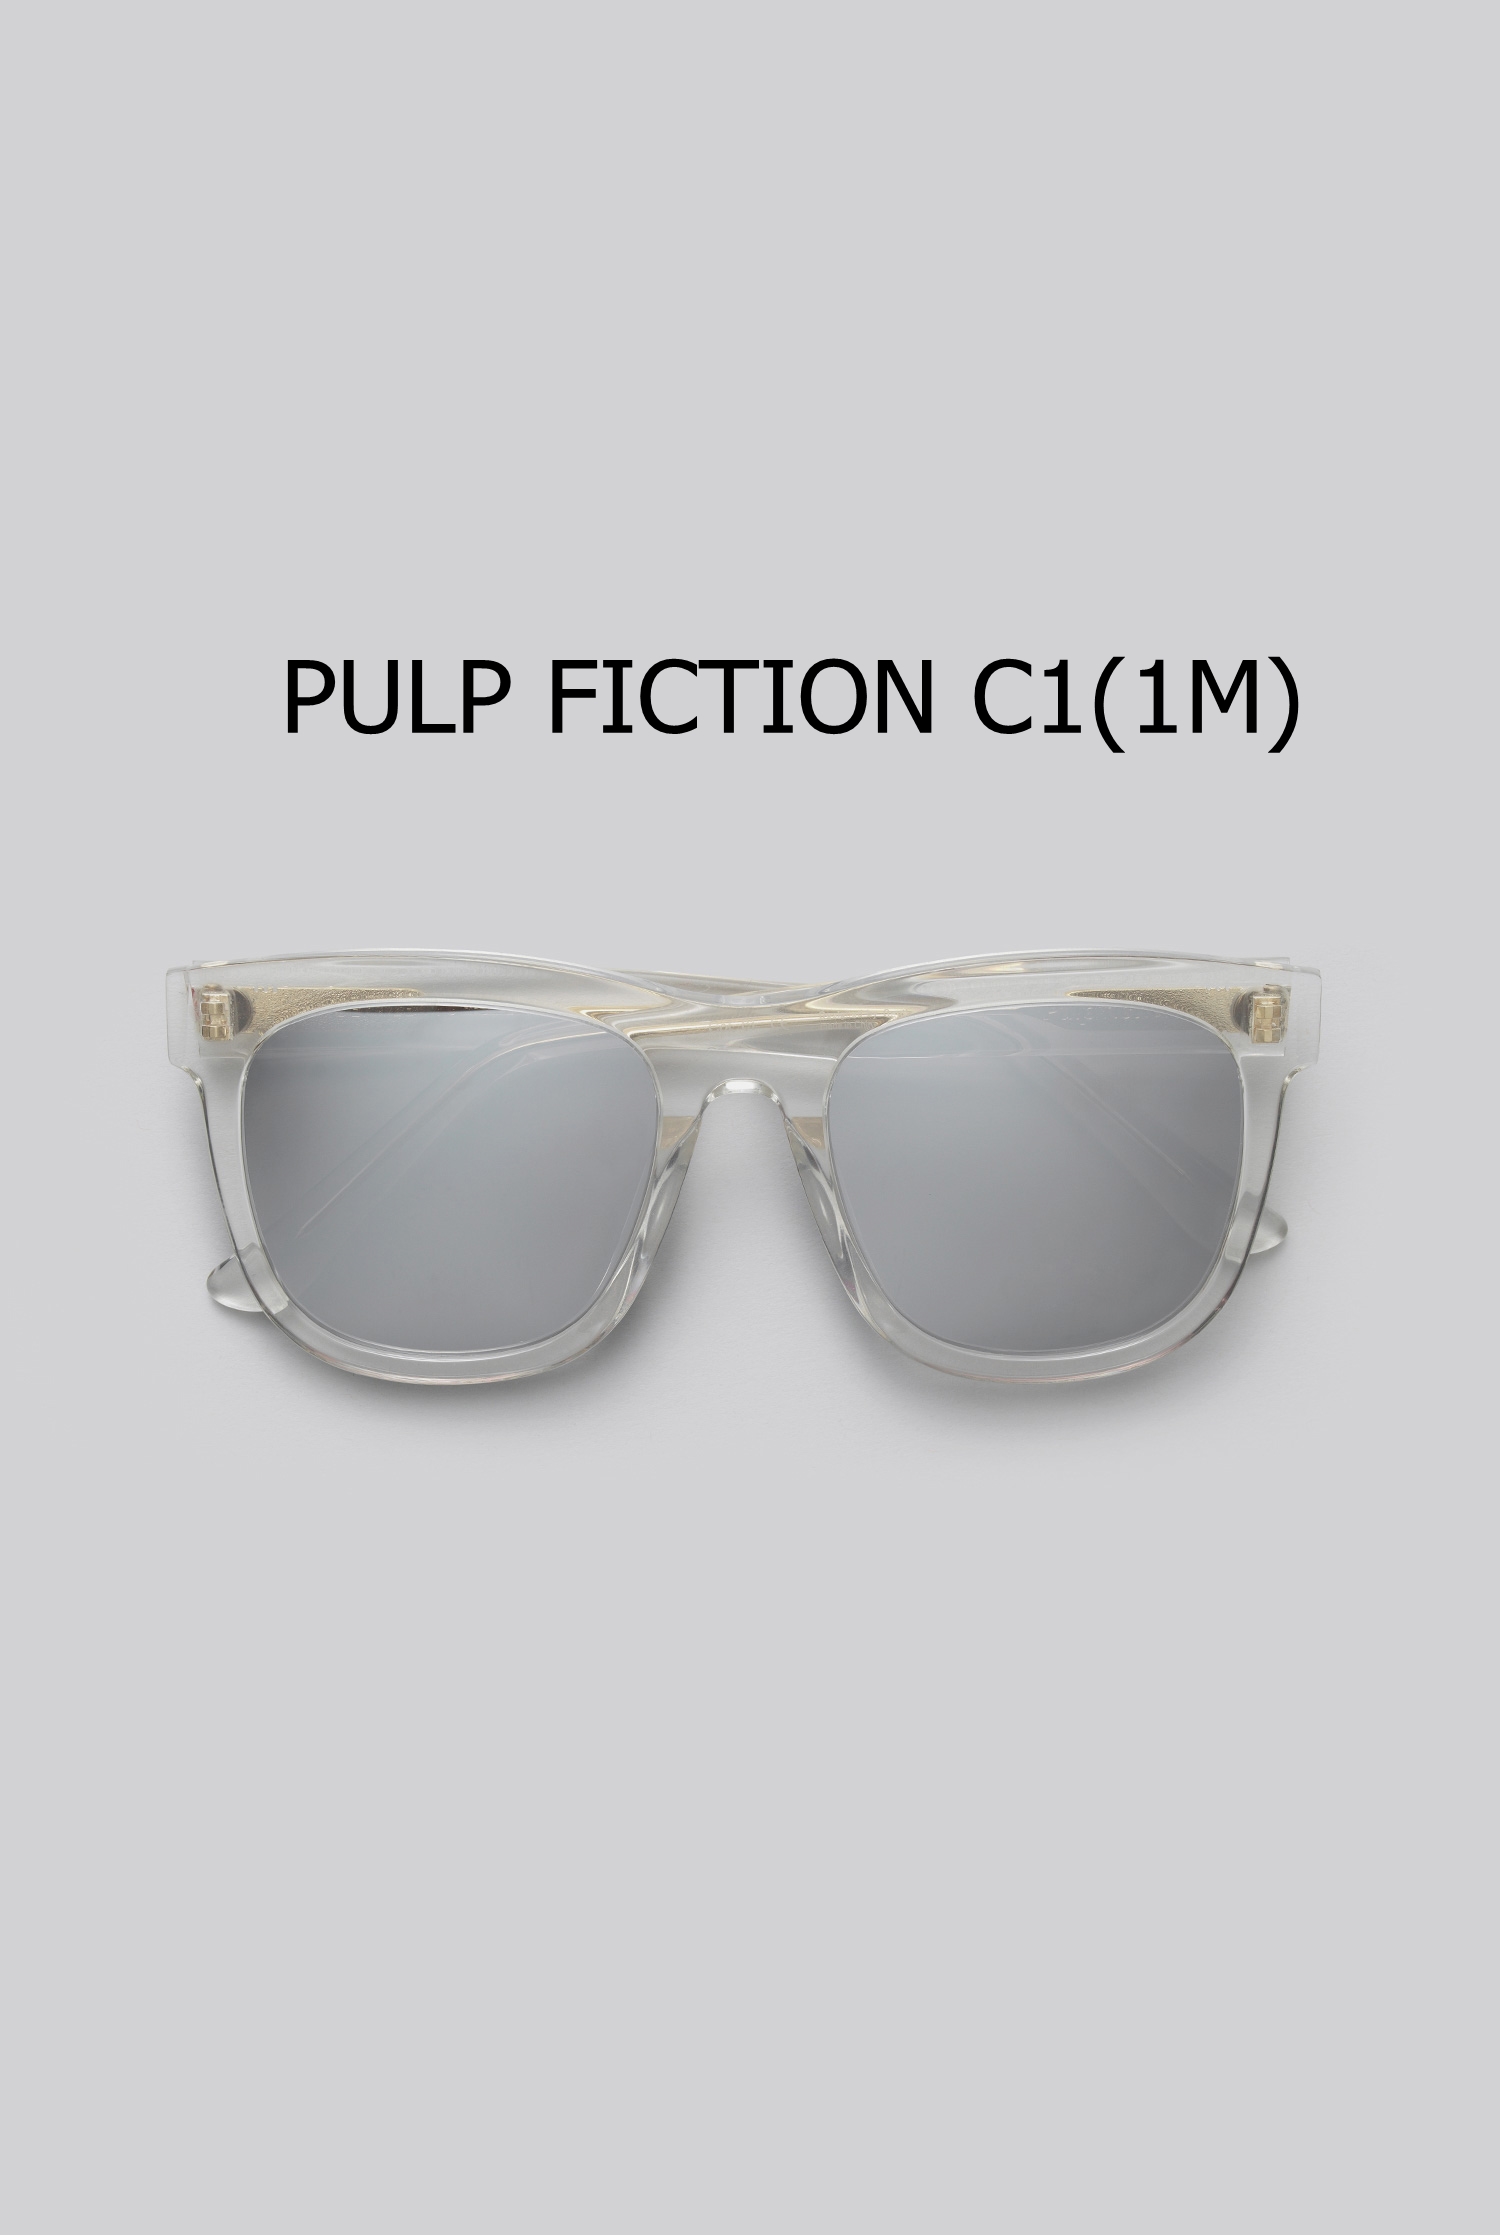 PULP FICTION C1(1M) 